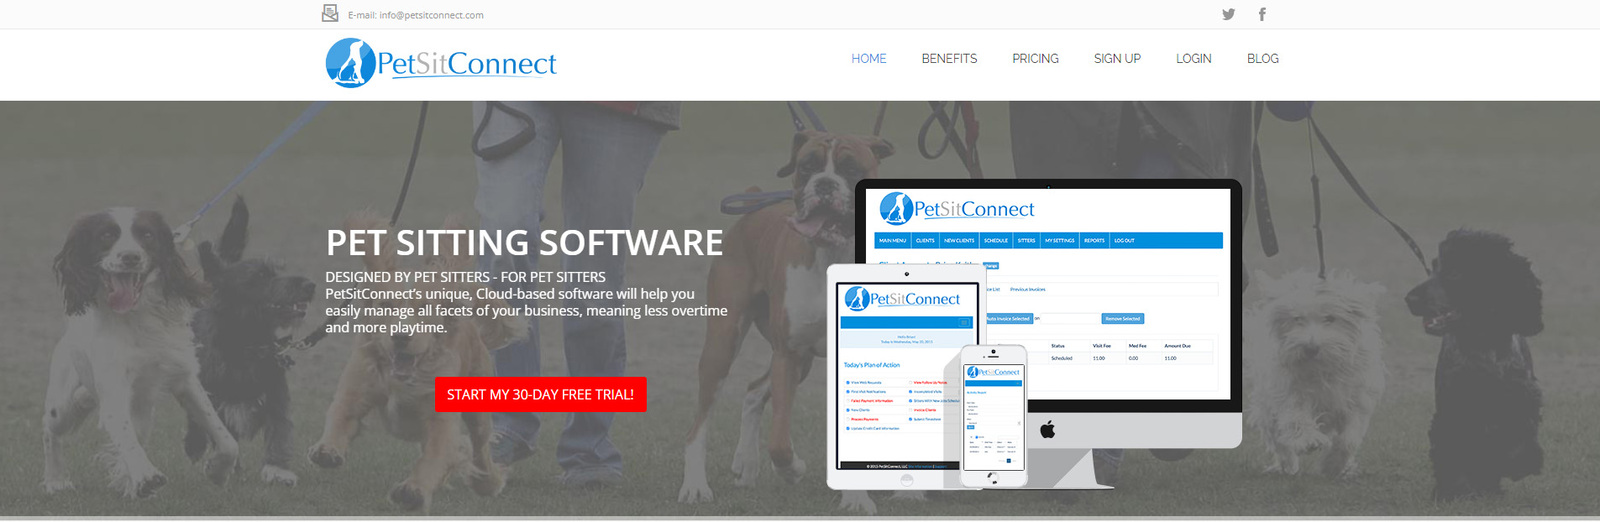 Migawka PetSitConnect, najwyżej ocenianej aplikacji do opieki nad zwierzętami.